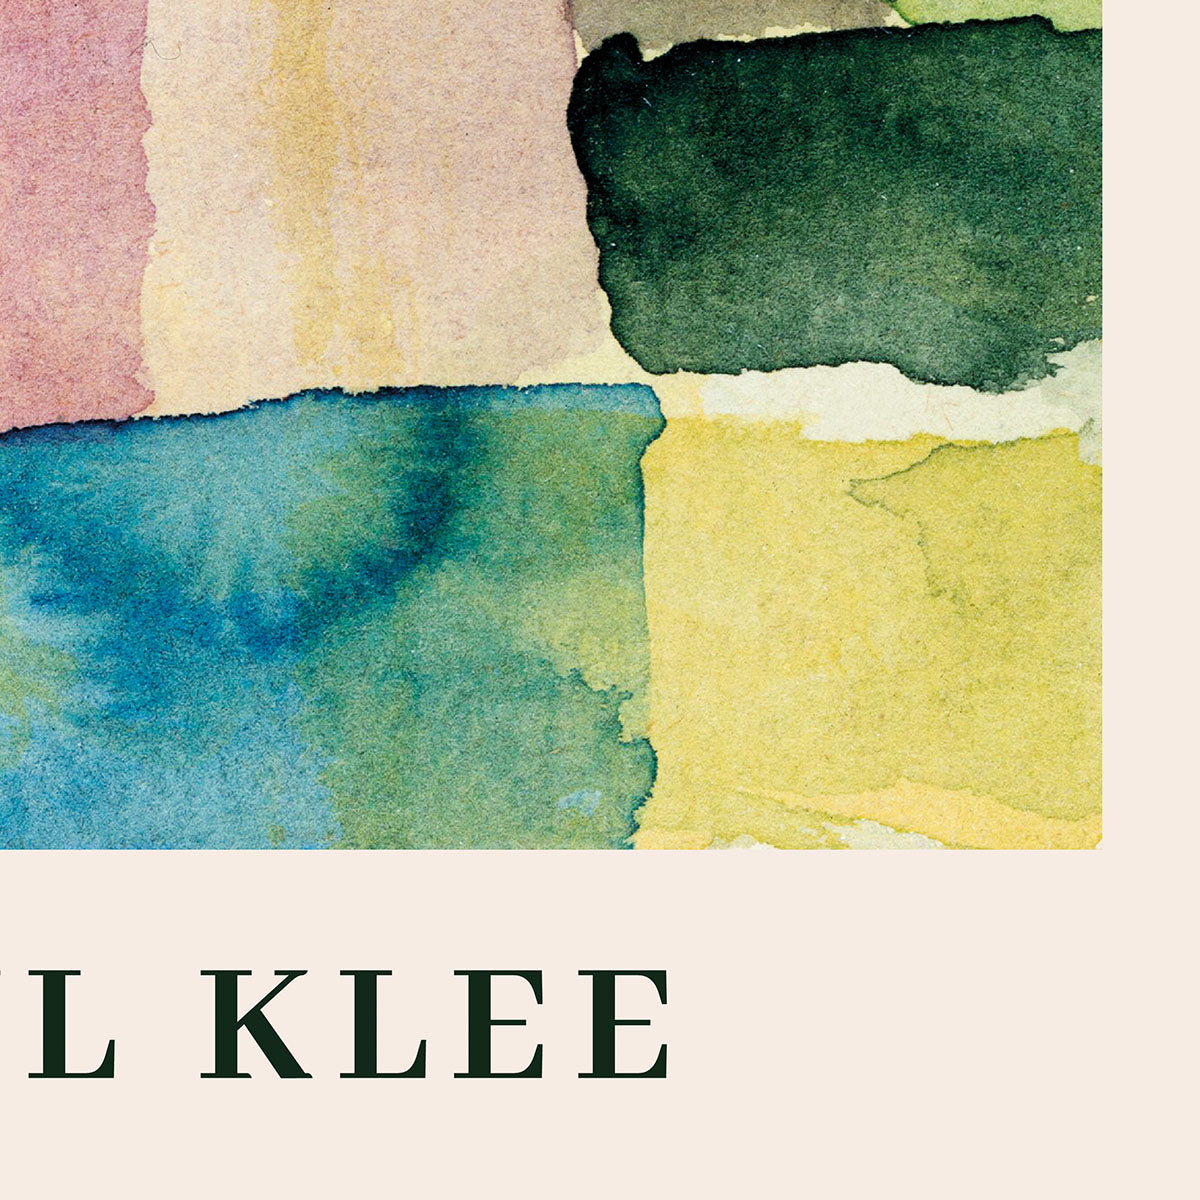 Close-up af Paul Klee "Untitled" plakat